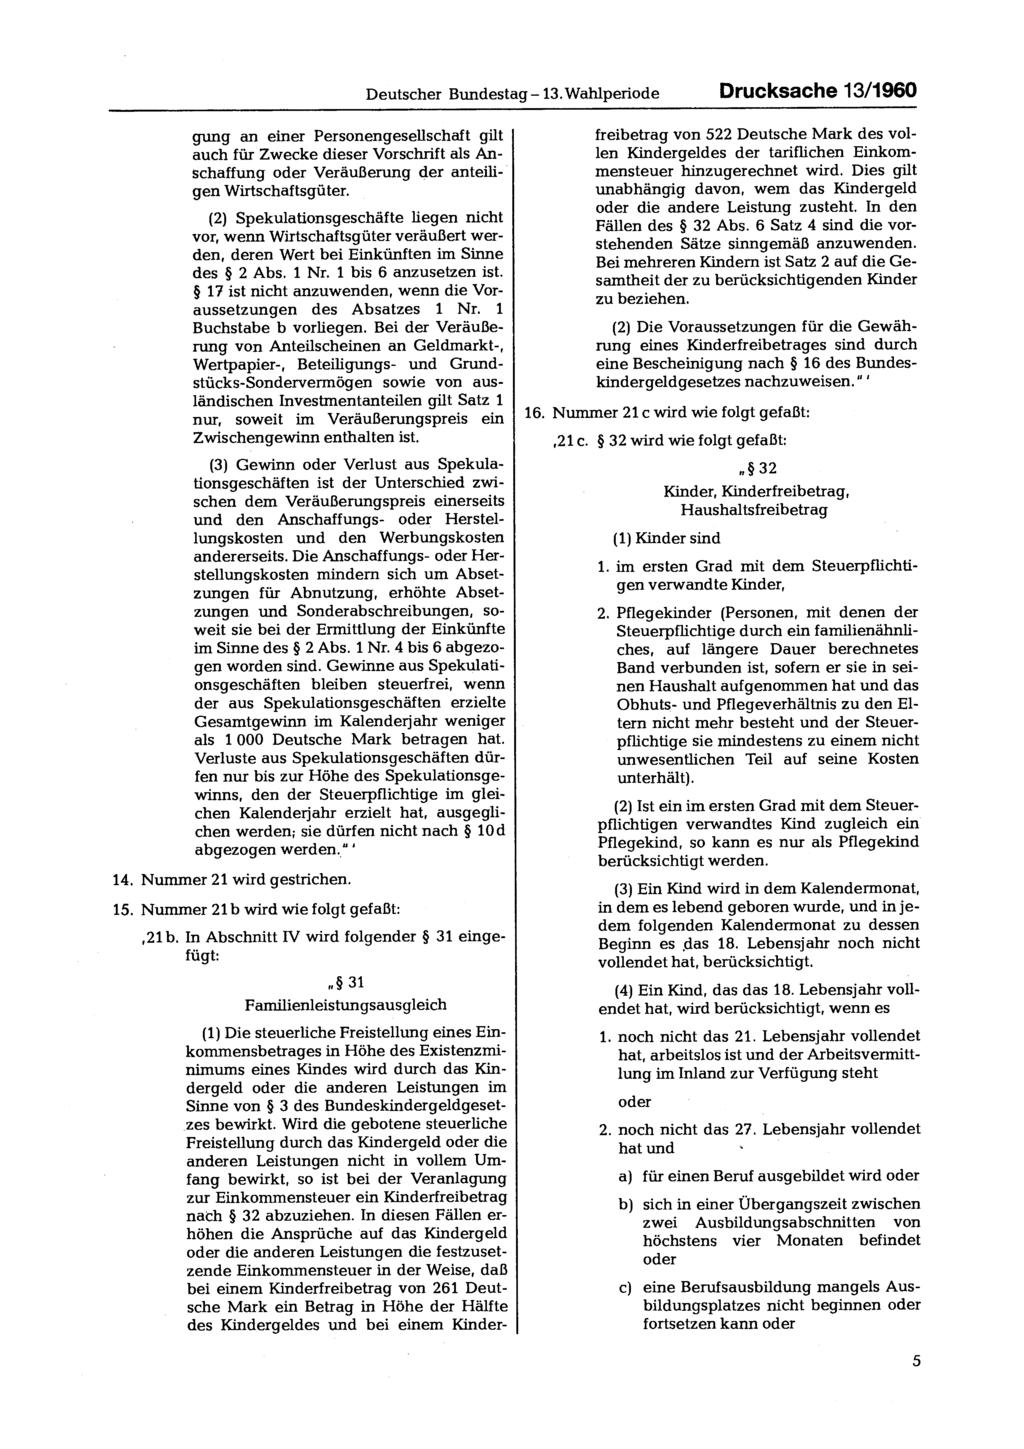 Deutscher Bundestag 13. Wahlperiode Drucksache 13/1960 gung an einer Personengesellschaft gilt auch für Zwecke dieser Vorschrift als Anschaffung oder Veräußerung der anteiligen Wirtschaftsgüter.